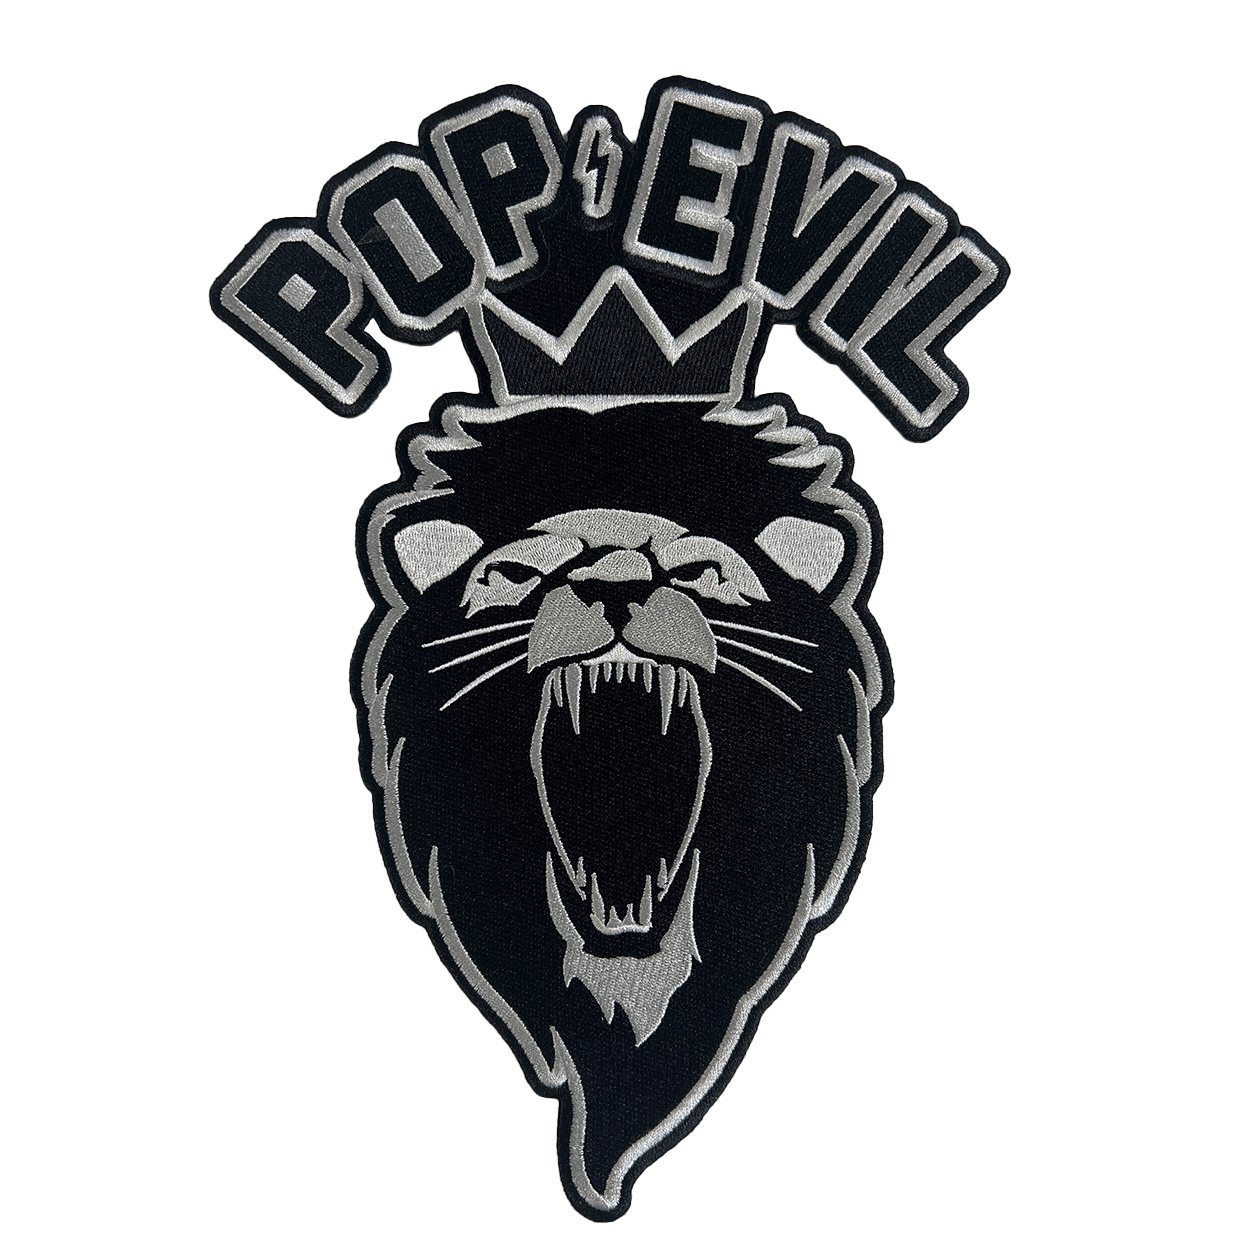 Pop Evil Lion Patch